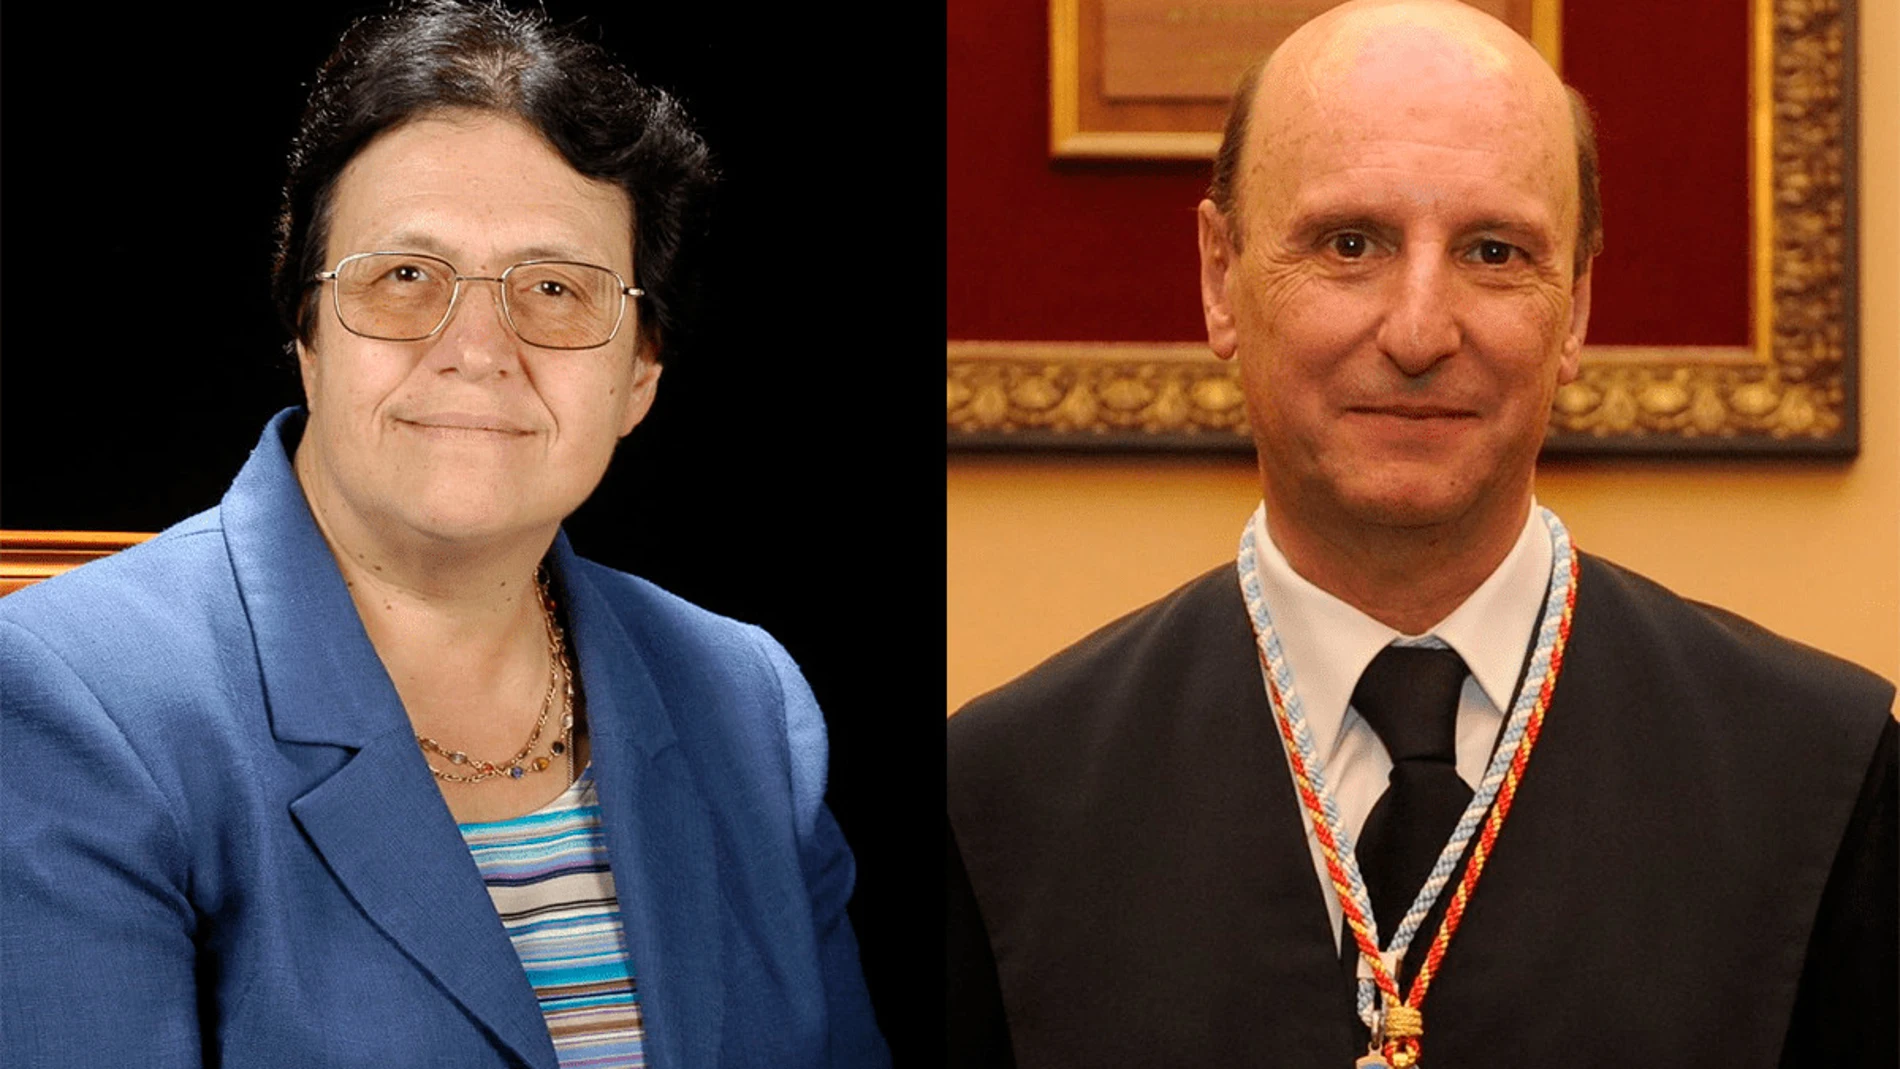 La catedrática Teresa Anguera y el catedrático Antonio Fernández de Buján han sido nombrados este martes, 9 de noviembre, doctores honoris causa por la Universidad de La Laguna